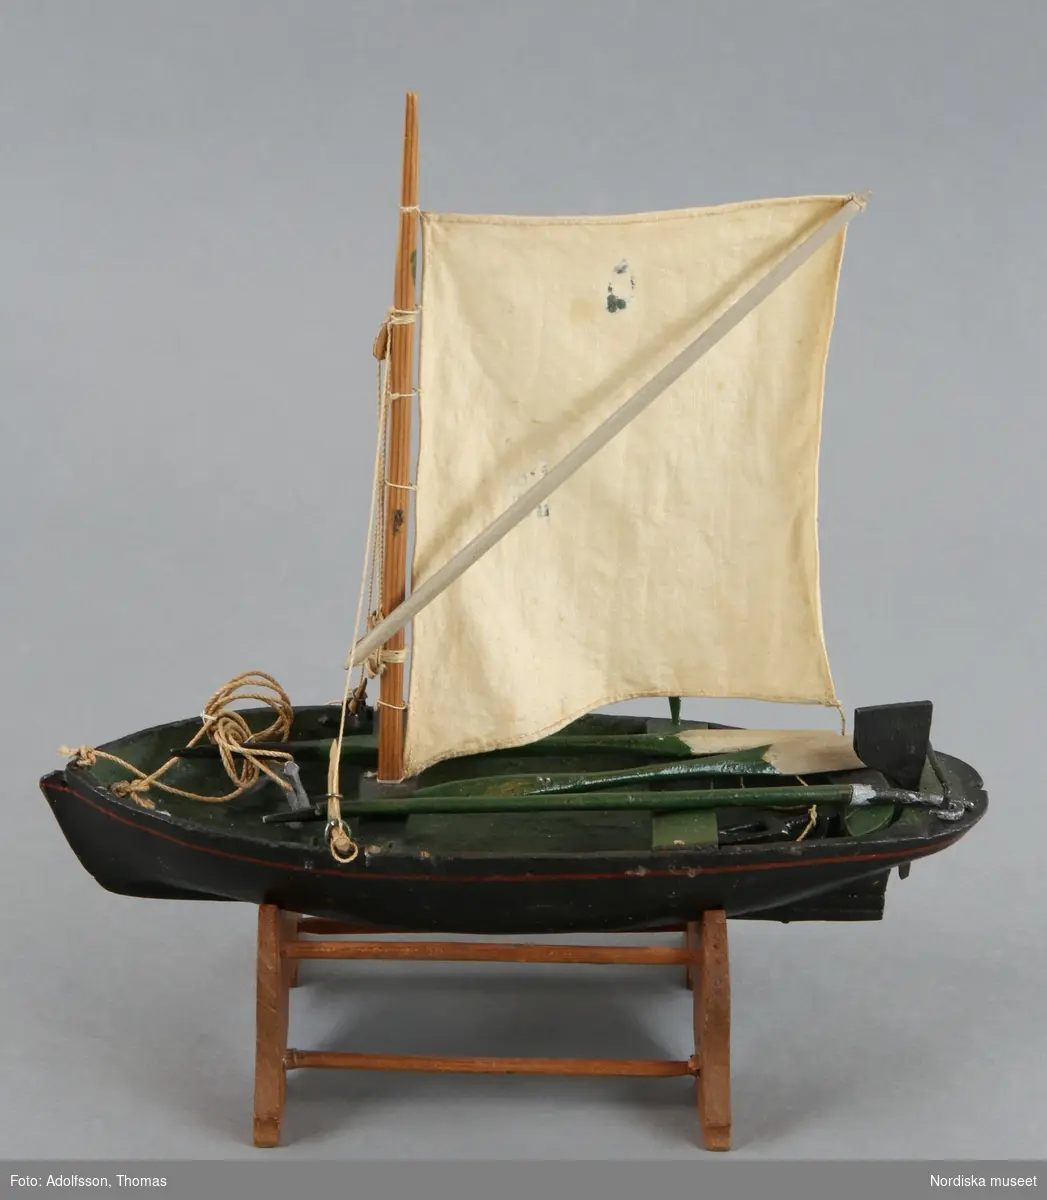 Inventering Sesam 1996-1999:
L 20,5, B 9, H 22 cm
Segelbåt "Ellida", av trä, svartmålad utanpå och grön inuti. Ett naturfärgat bomullssegel, ett par åror, en båtshake, ett ankare, ett öskar och ett roder. Båten har två tofter, varav den främre är fäste för masten. Båten står på en träställning. Tillverkades 1858 av nuvarande överlotsen Wirsén på Örö i Kalmar län, vid omkring 15 års ålder. 
Helena Carlsson 1996